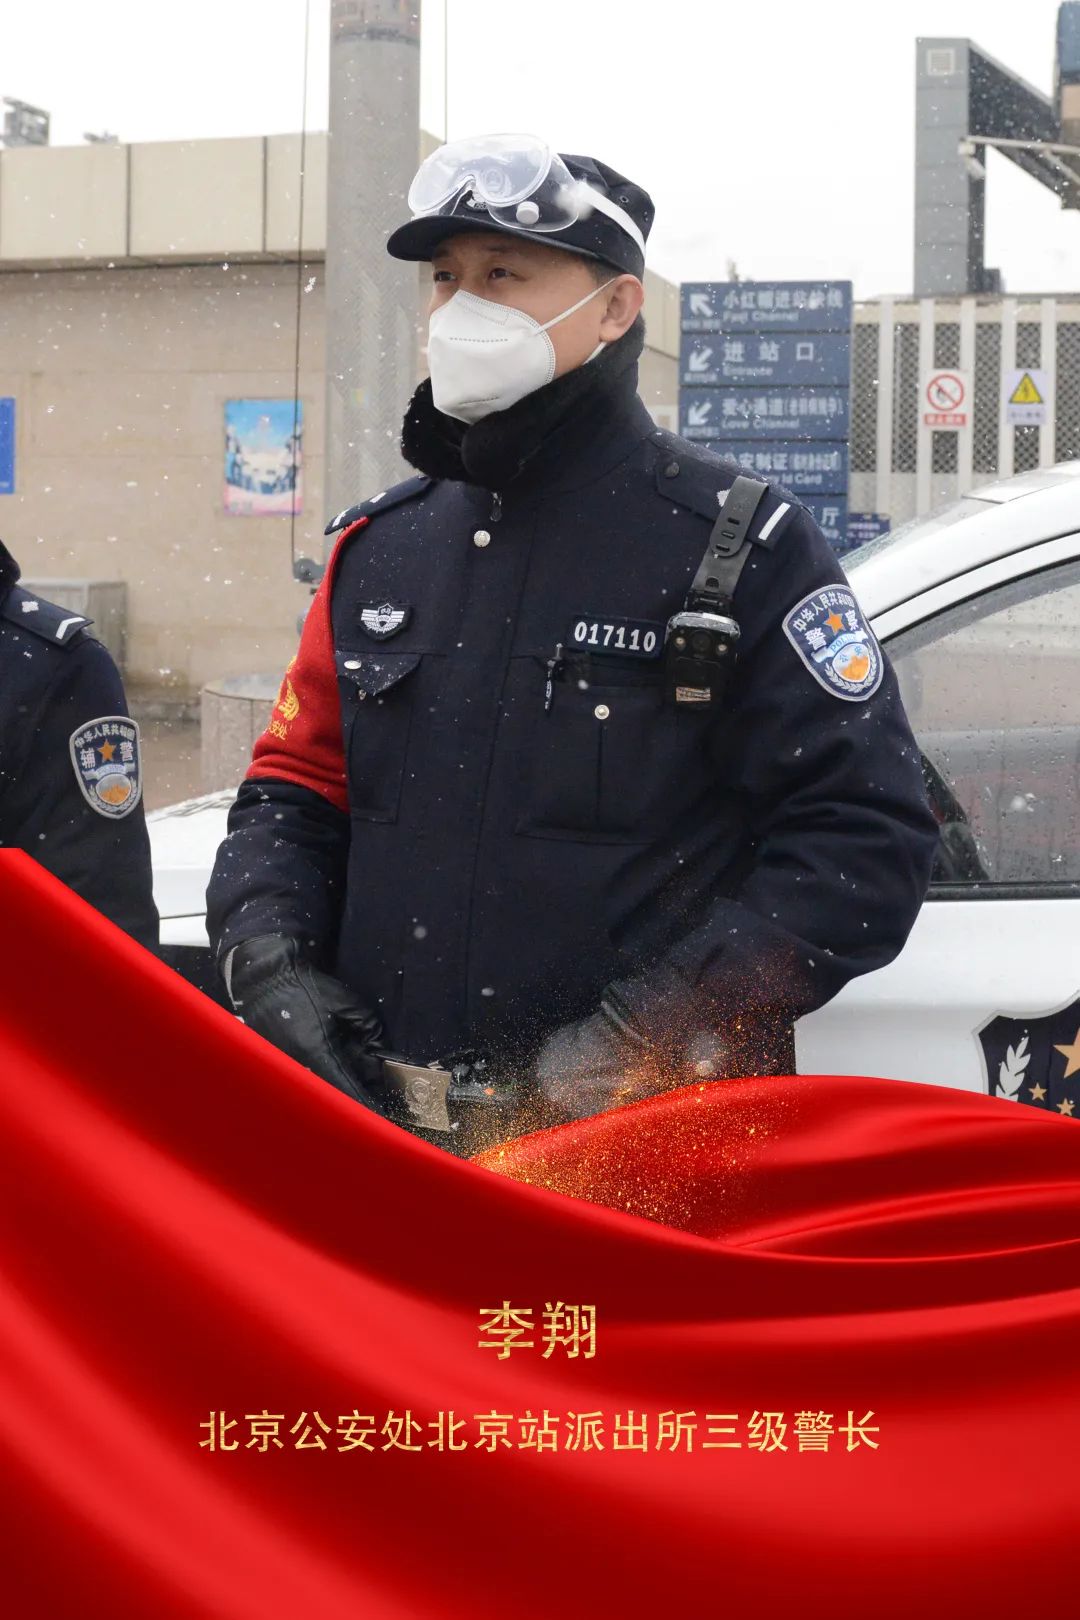 【先进典型】李翔:在为民服务中践行从警初心